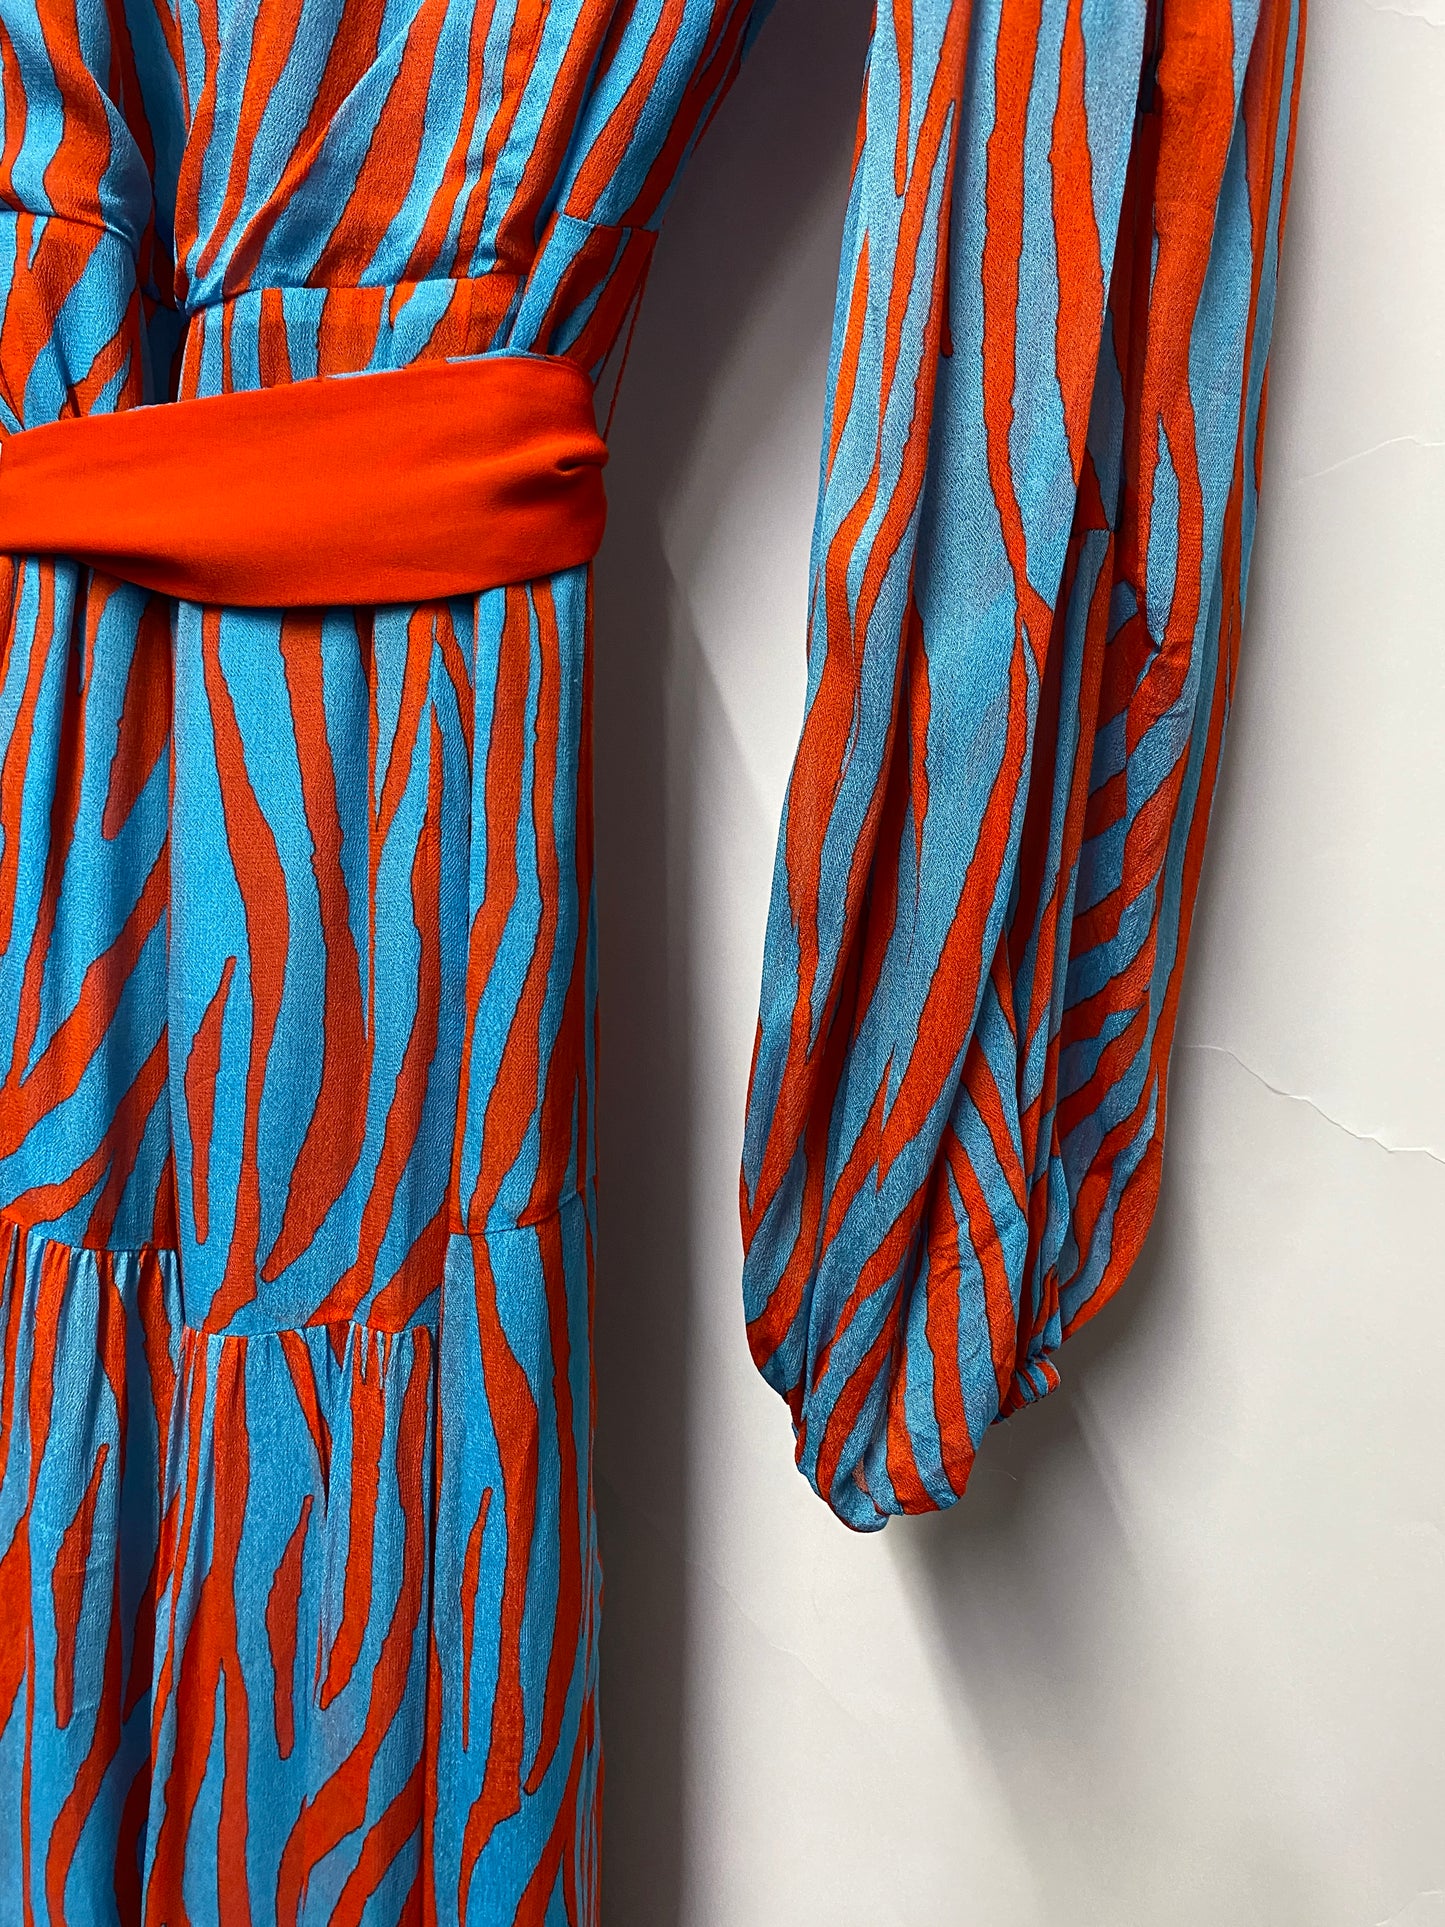 Diane Von Furstenberg Blue and Red Tie Waist Dress XL